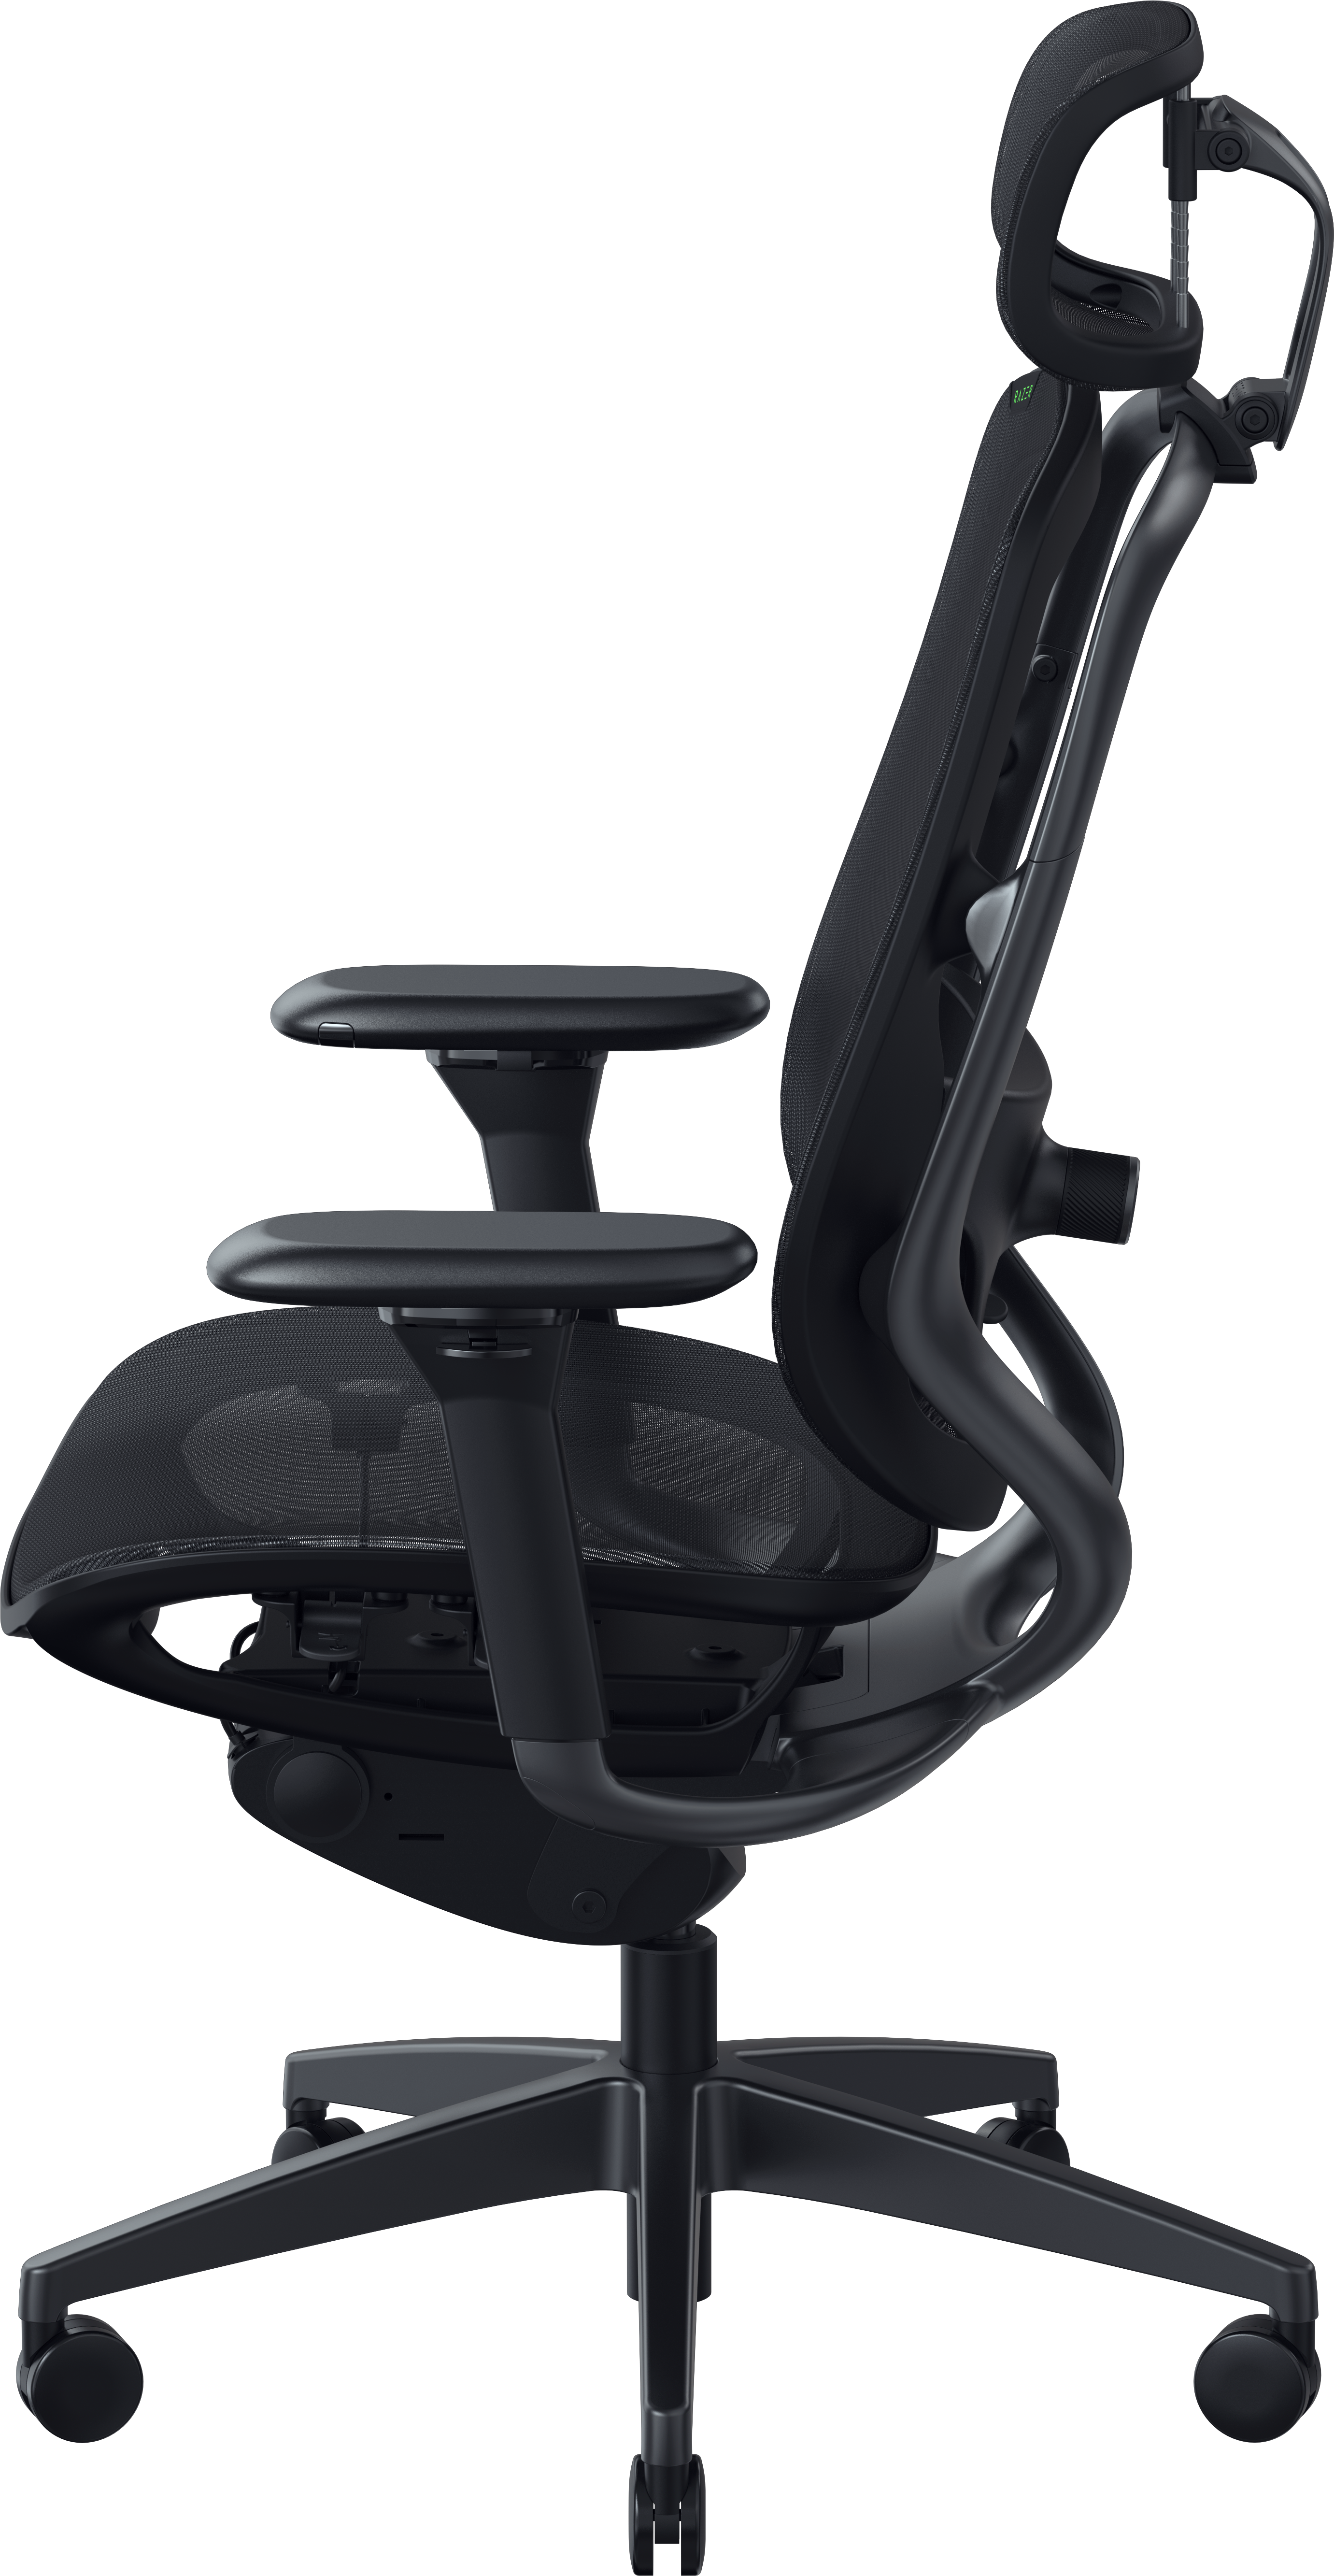 RAZER Fujin Pro - Anpassbarer Gaming-Stuhl mit robustem